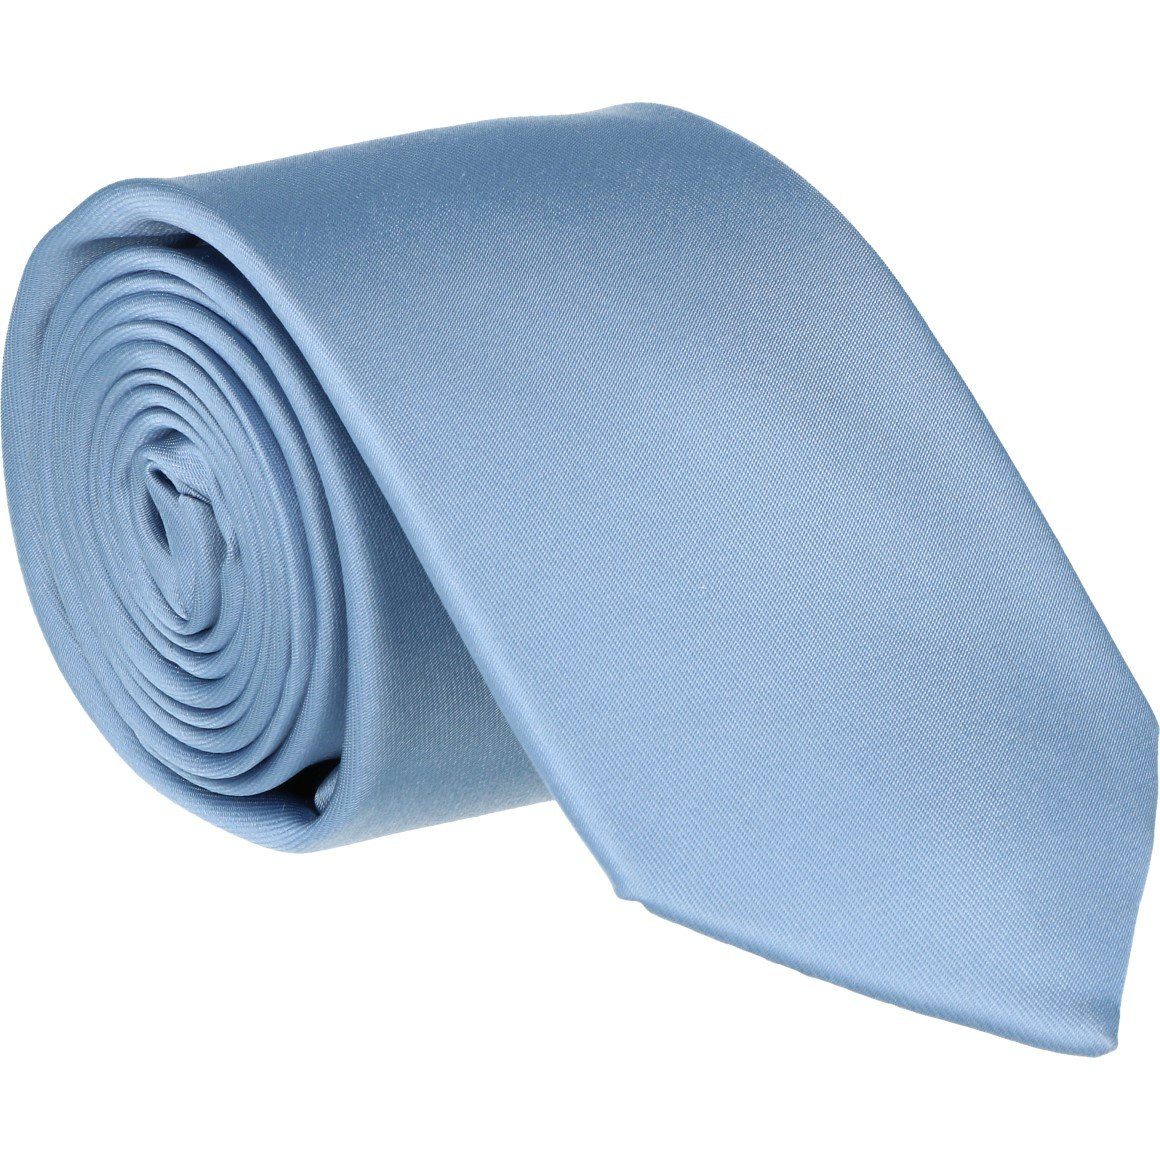 WILLEN Krawatte hellblau